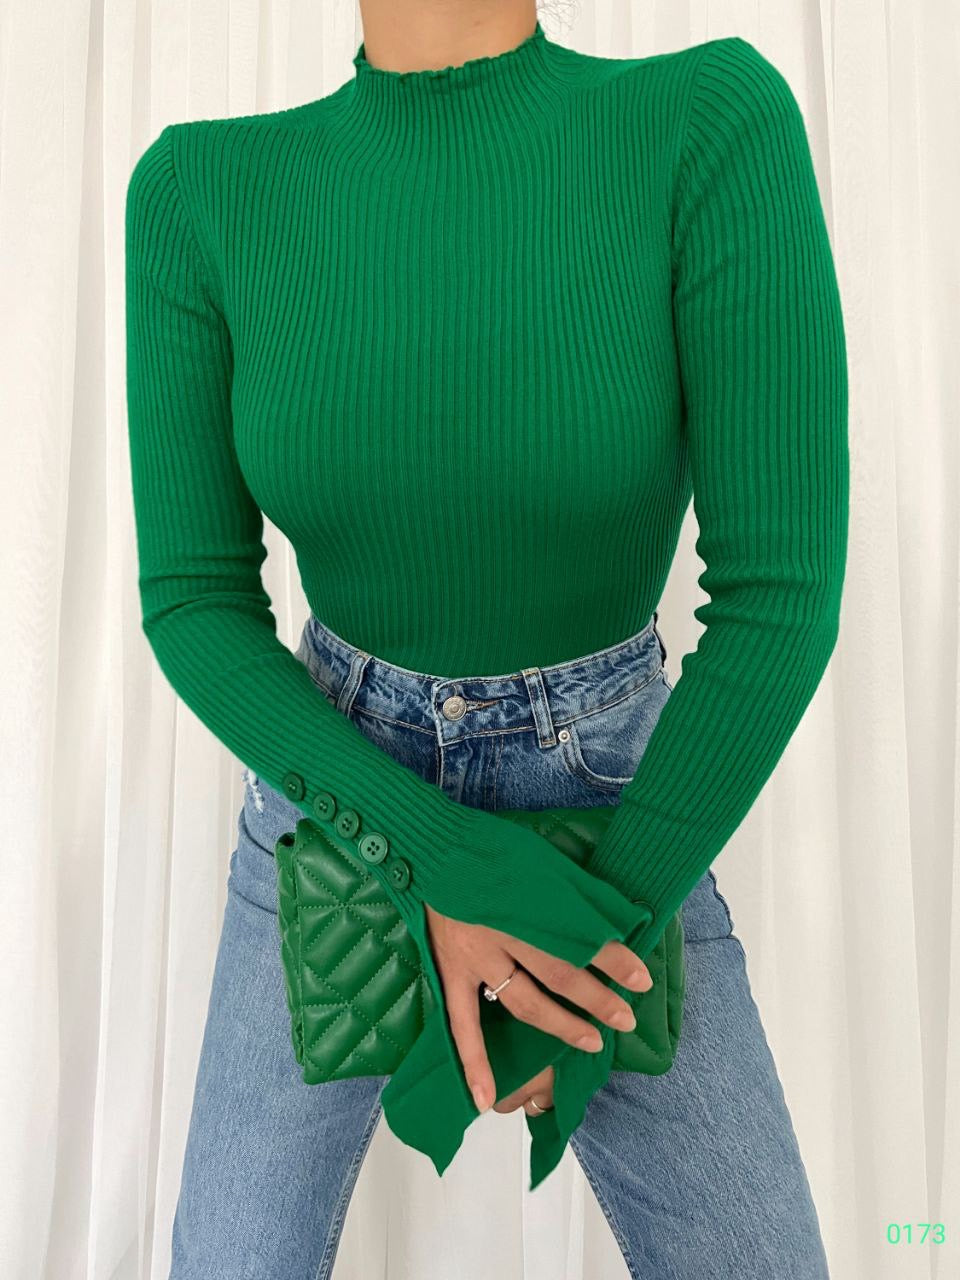 Дамска блуза MILENA  https://bvseductive.com/products/womans-s-shirts-tops-milena-2  практична дамска блуза в зелен цвят изработена от фина рипсена материя с полу поло яка и дълъг интересен ръкав стилен и лесно комбинативен модел за всеки ден подходяща за S/M